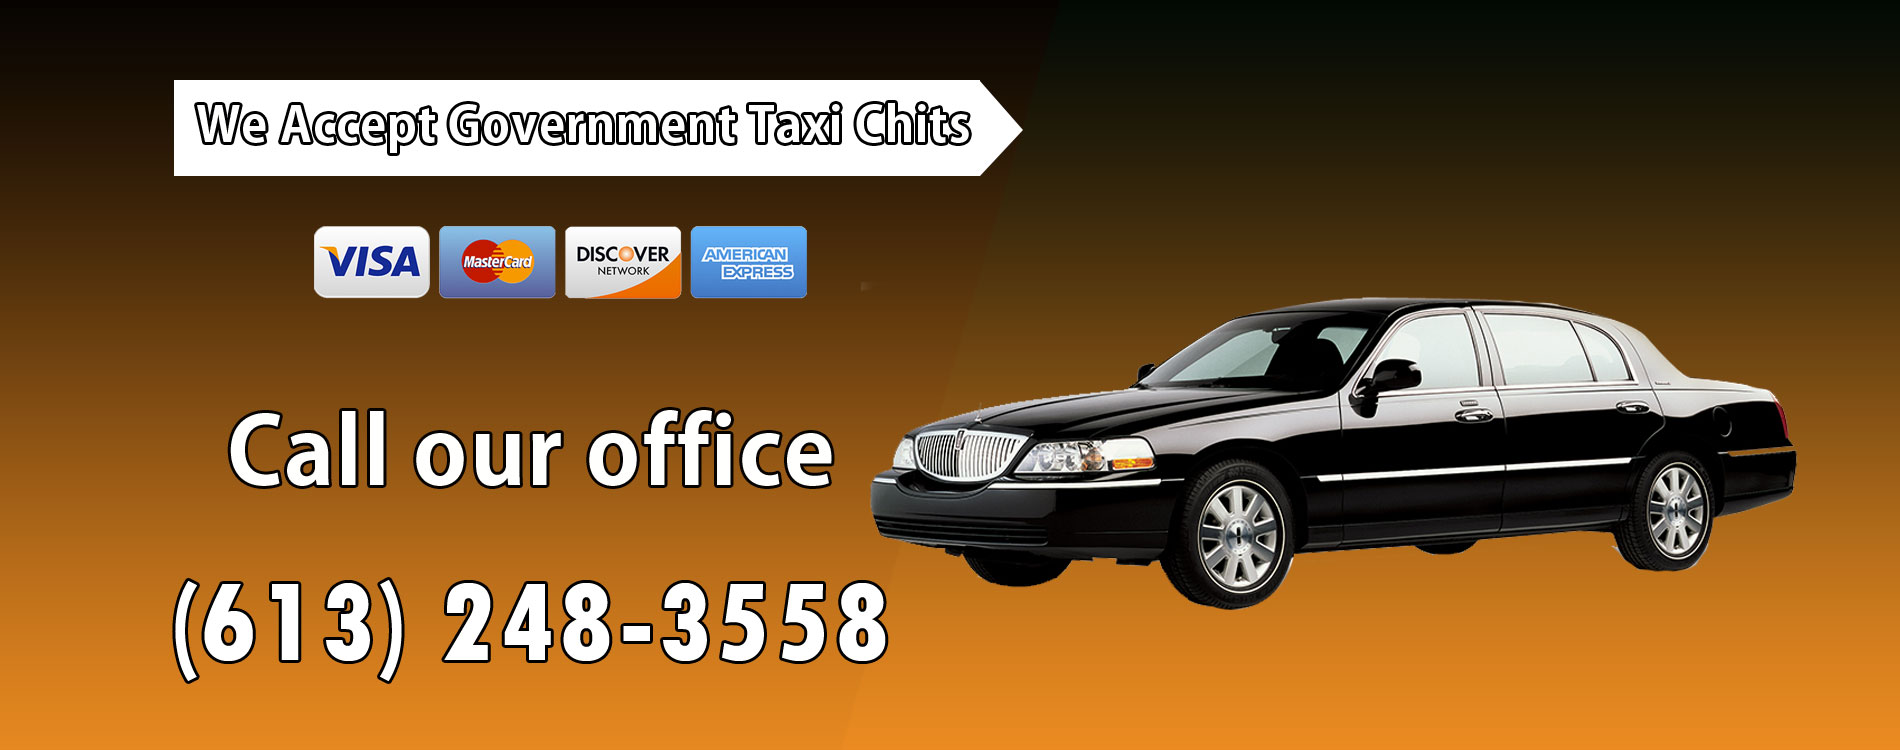 Corporate cab Services Ottawa